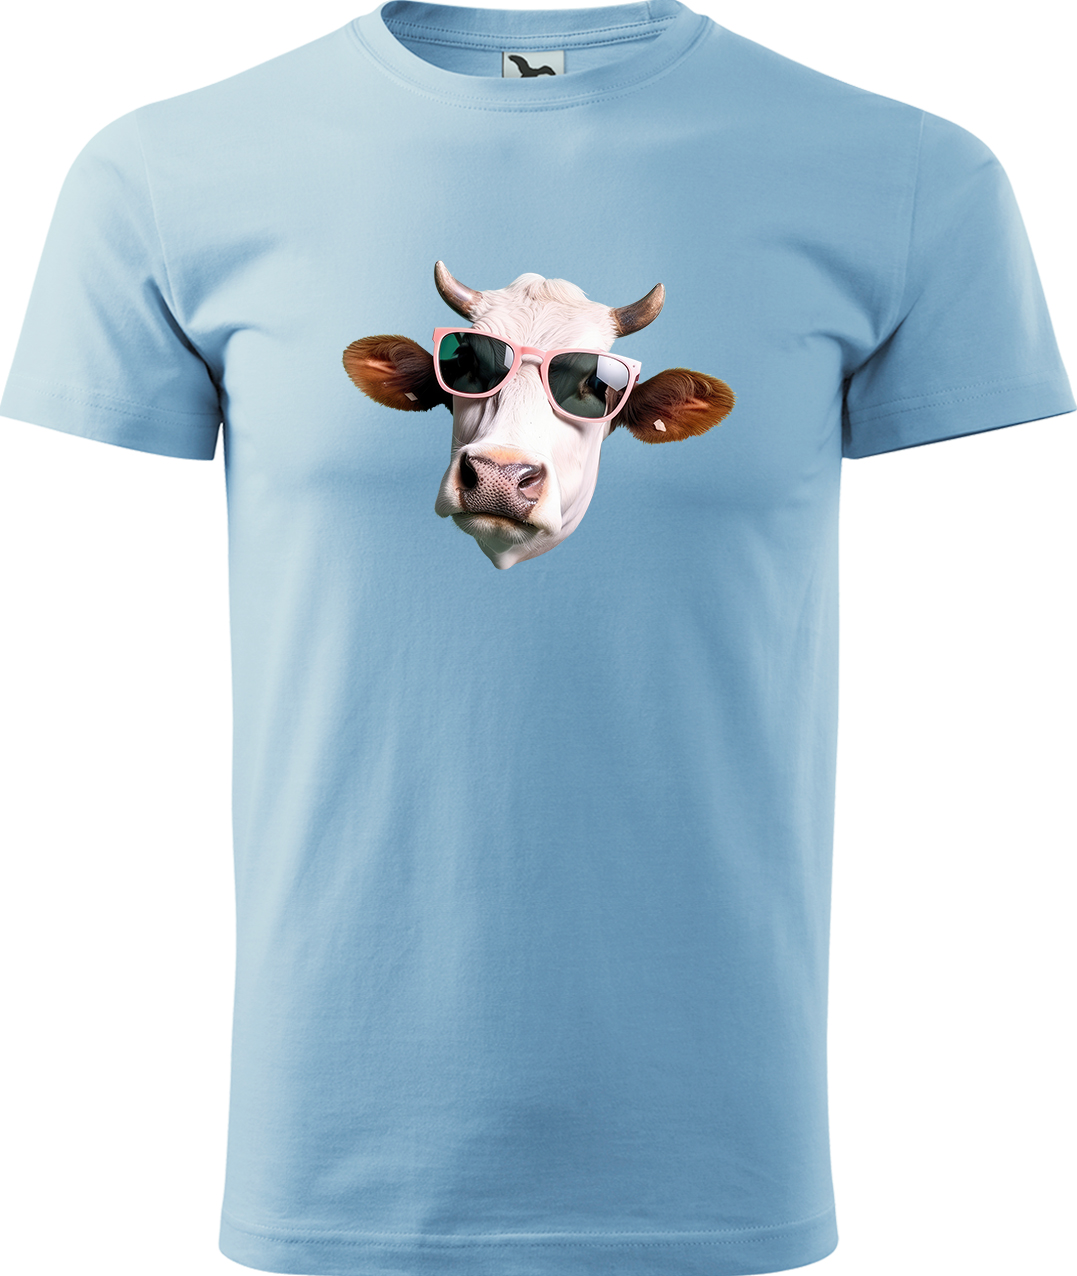 Pánské tričko s krávou - Kráva v brýlích Velikost: M, Barva: Nebesky modrá (15), Střih: pánský